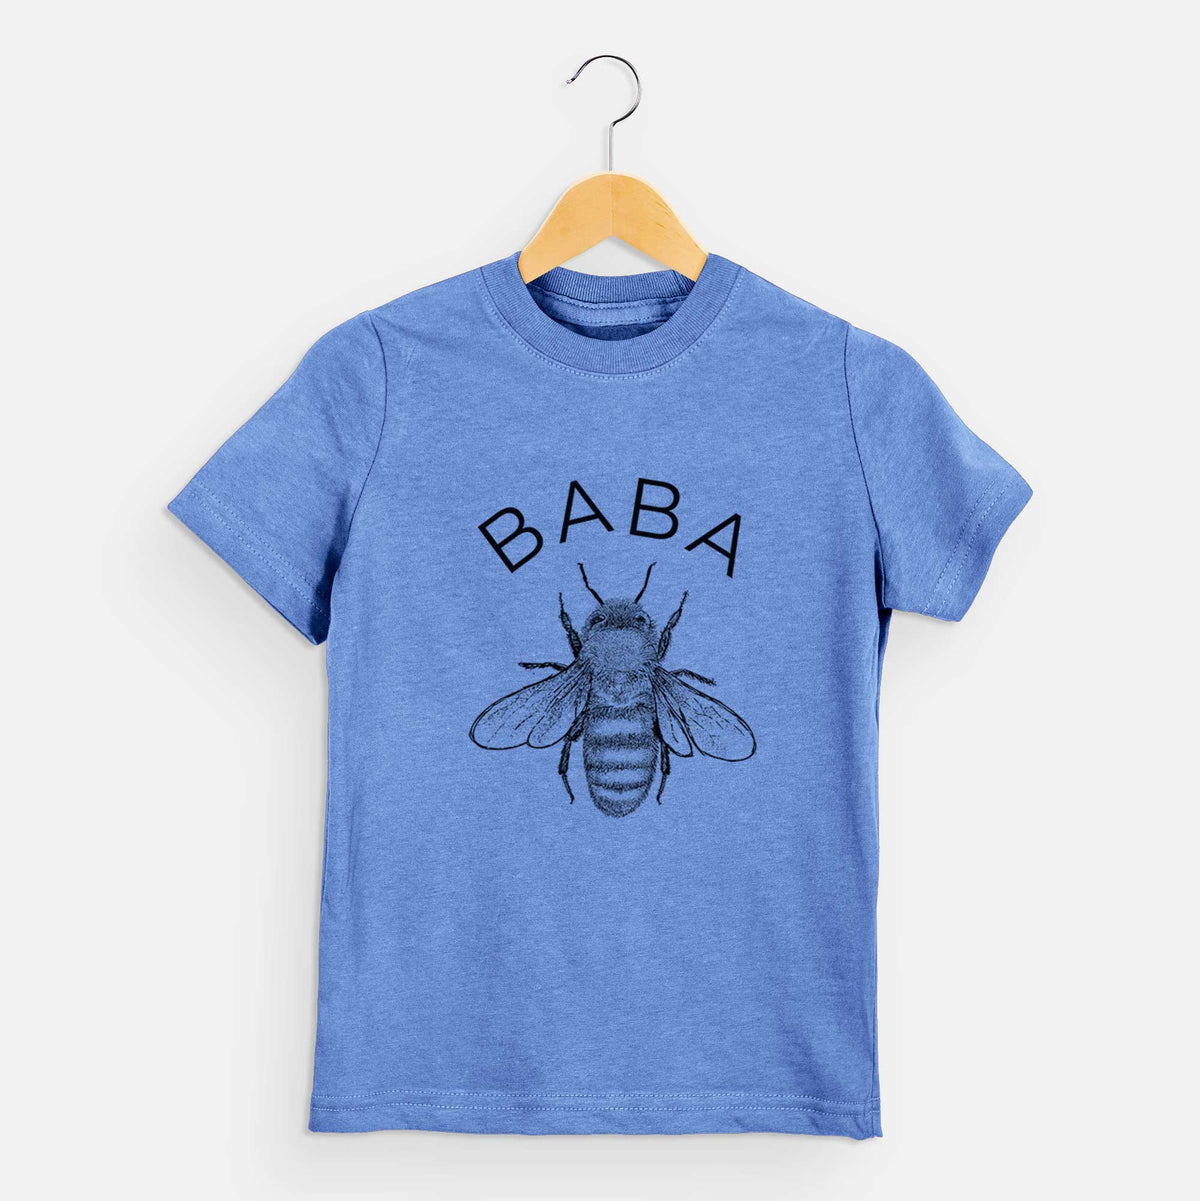 Baba Bee - Kids Shirt